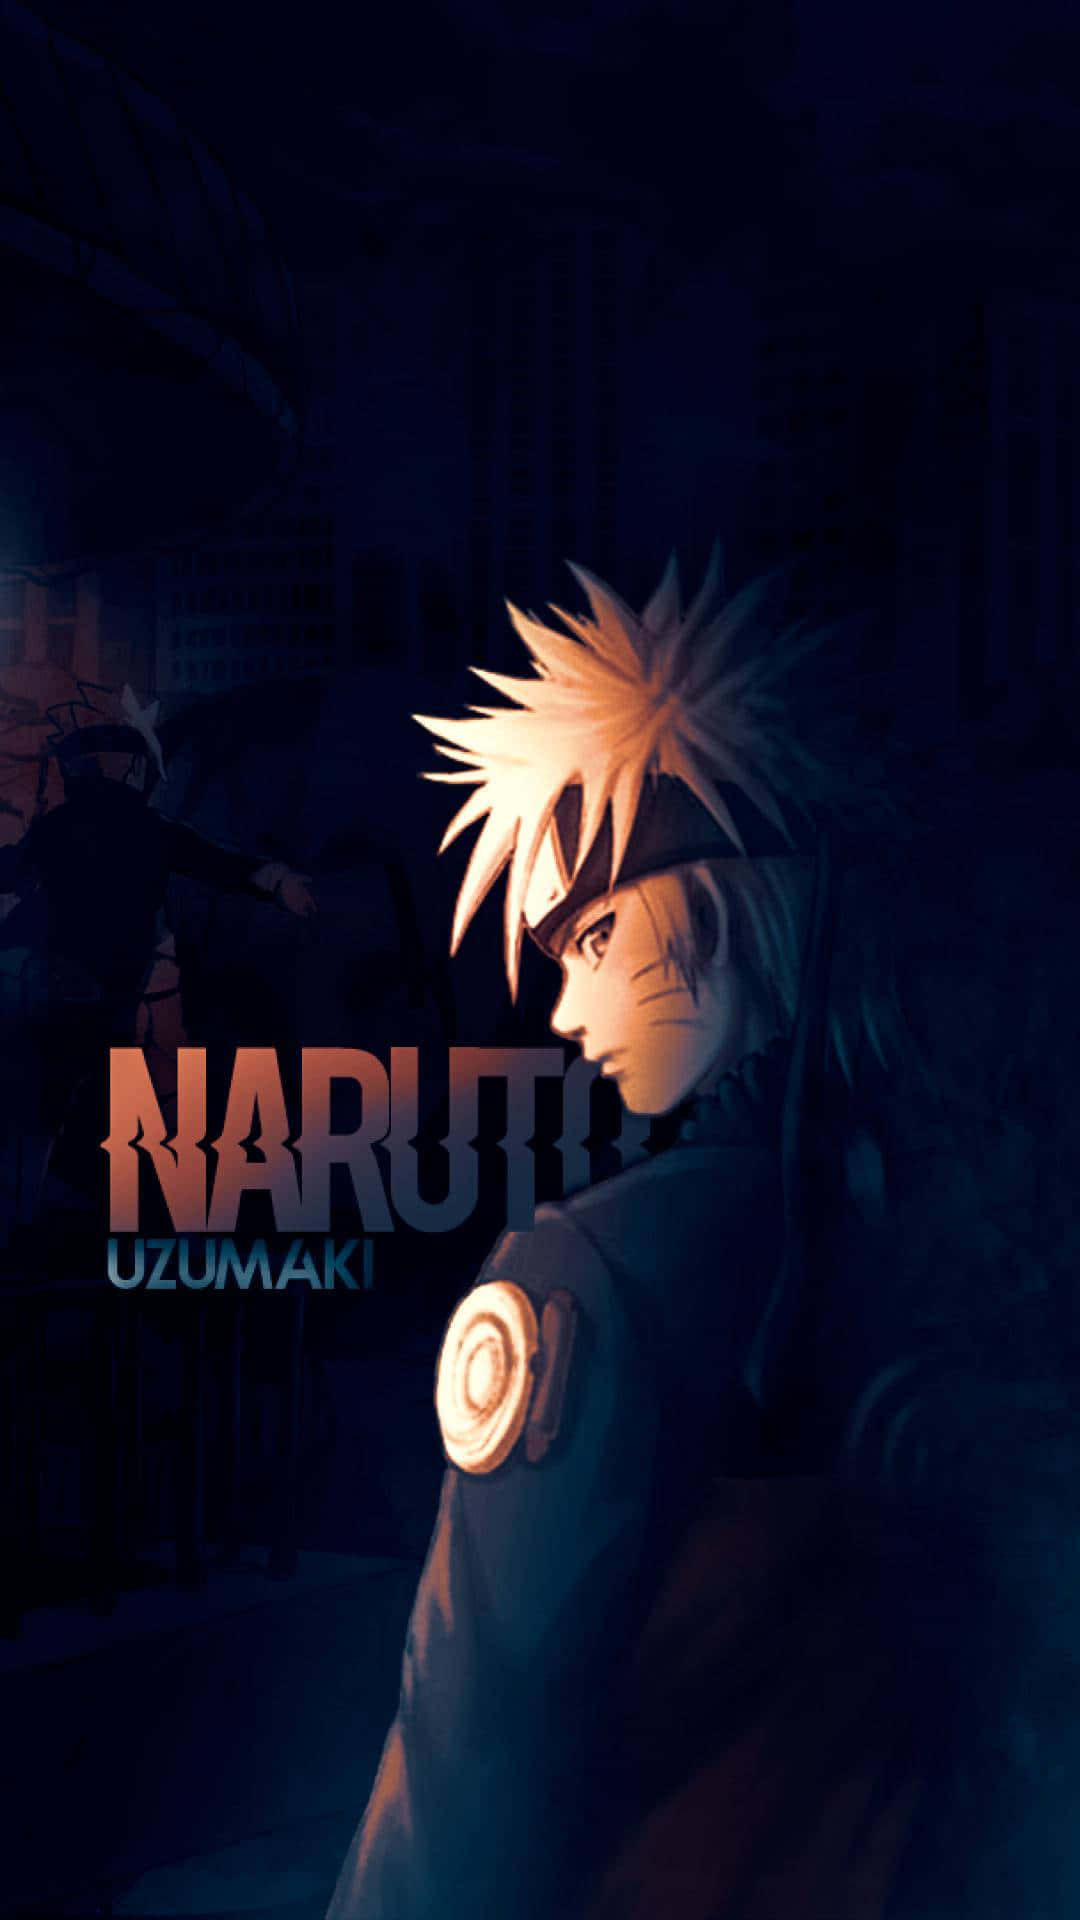 Eineinsamer Naruto Umarmt Seine Trauer In Der Einsamkeit. Wallpaper